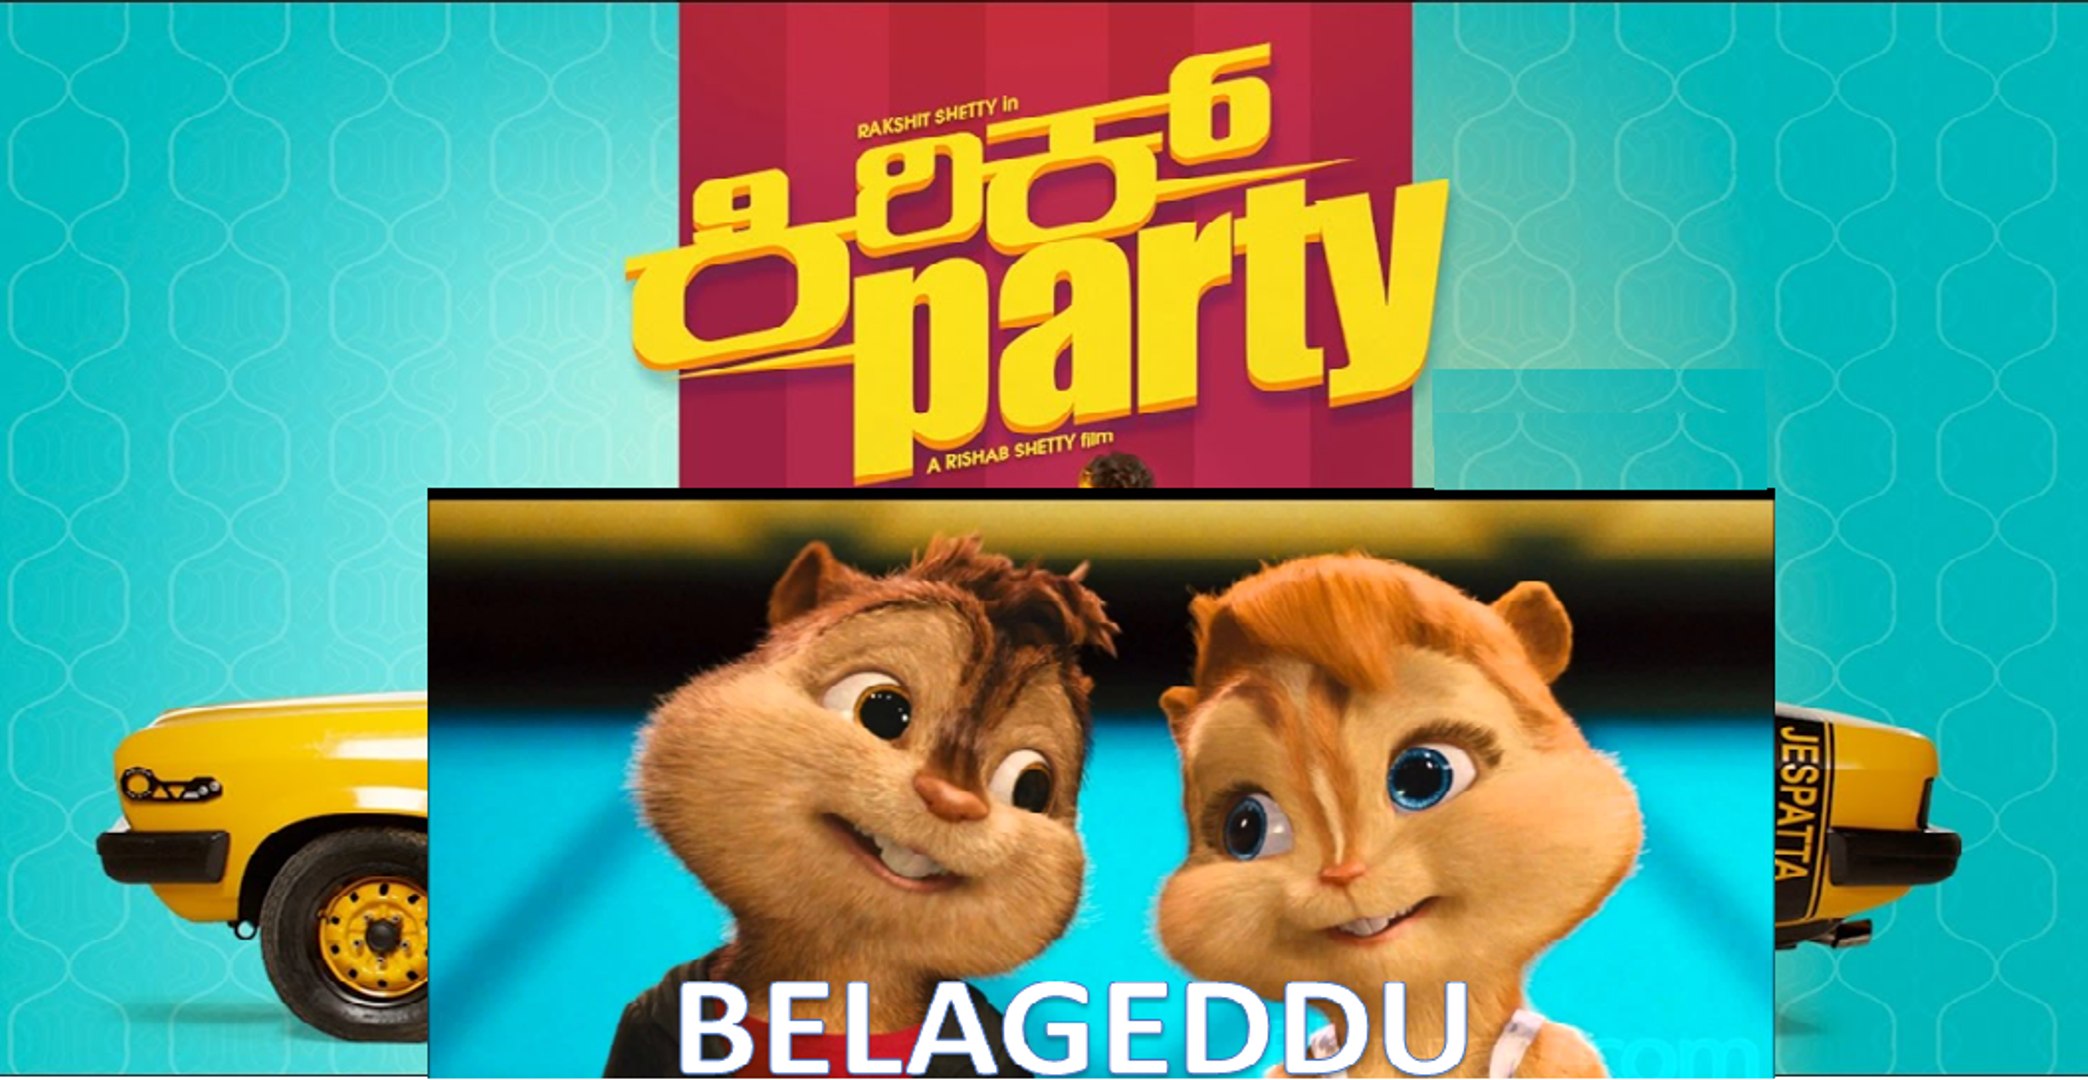 Belageddu Kriik Party - Chipmunk Version